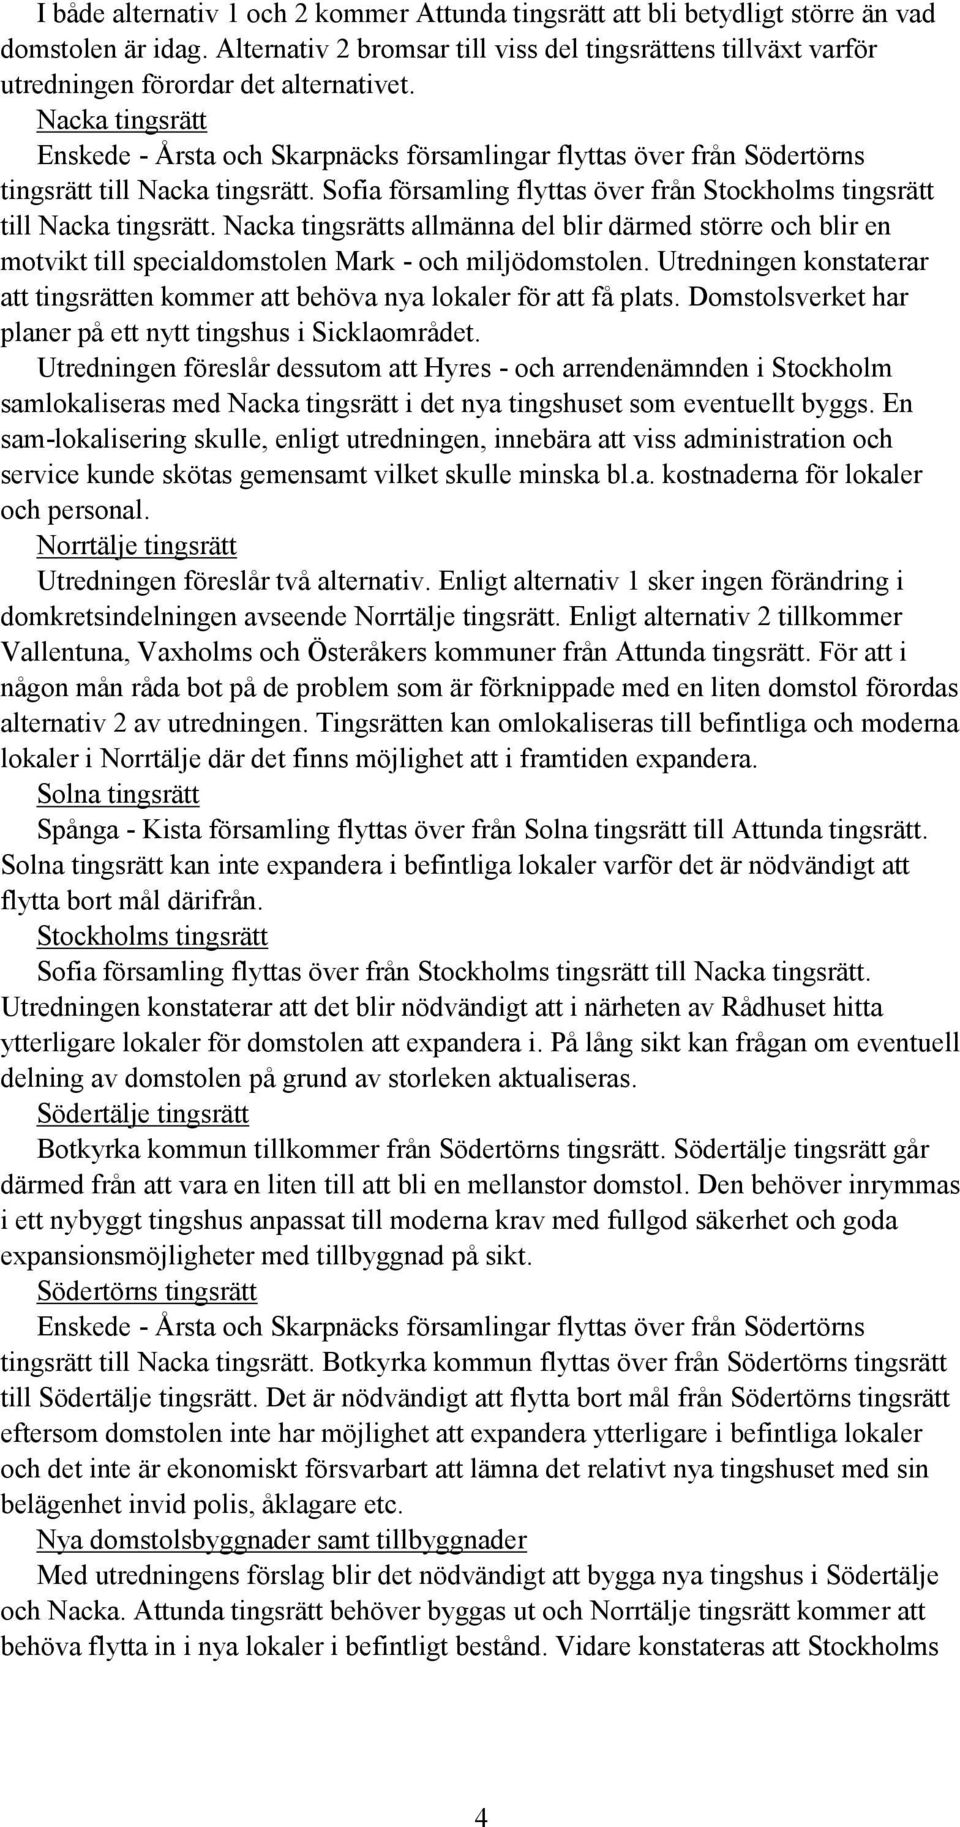 Nacka tingsrätt Enskede - Årsta och Skarpnäcks församlingar flyttas över från Södertörns tingsrätt till Nacka tingsrätt. Sofia församling flyttas över från Stockholms tingsrätt till Nacka tingsrätt.